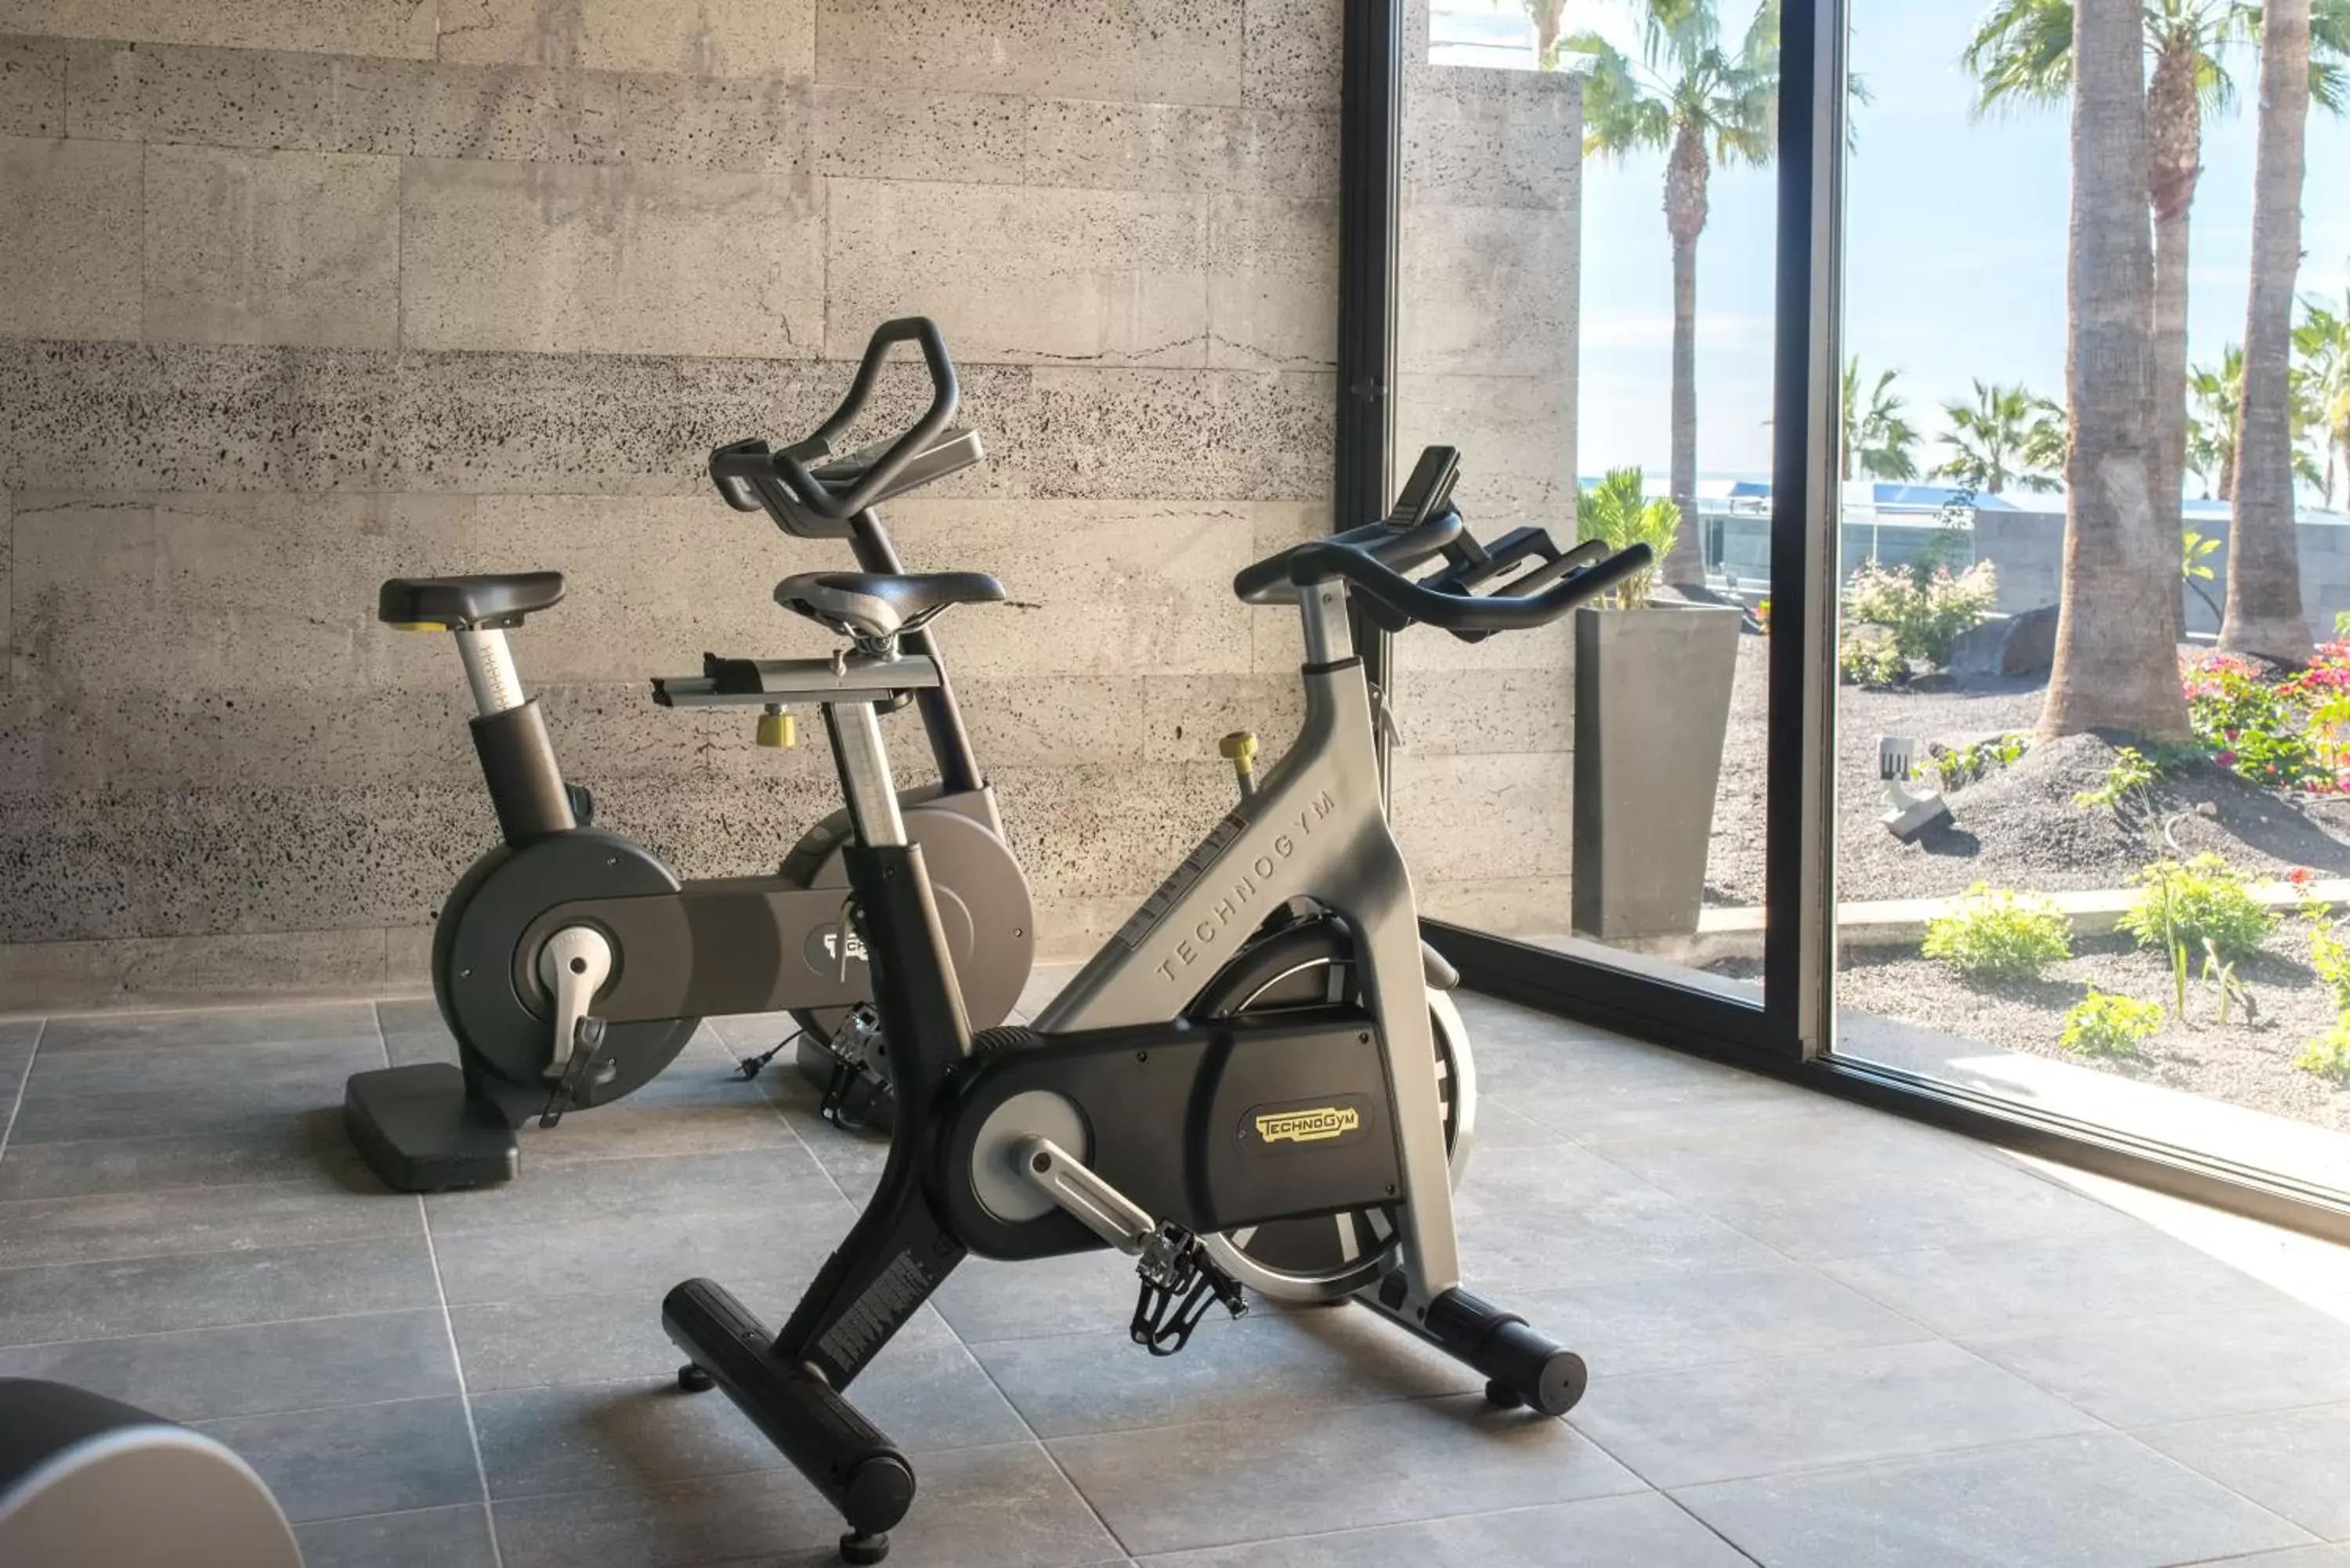 Fitness centre/facilities, Fitness Center/Facilities in La Isla y el Mar, Hotel Boutique